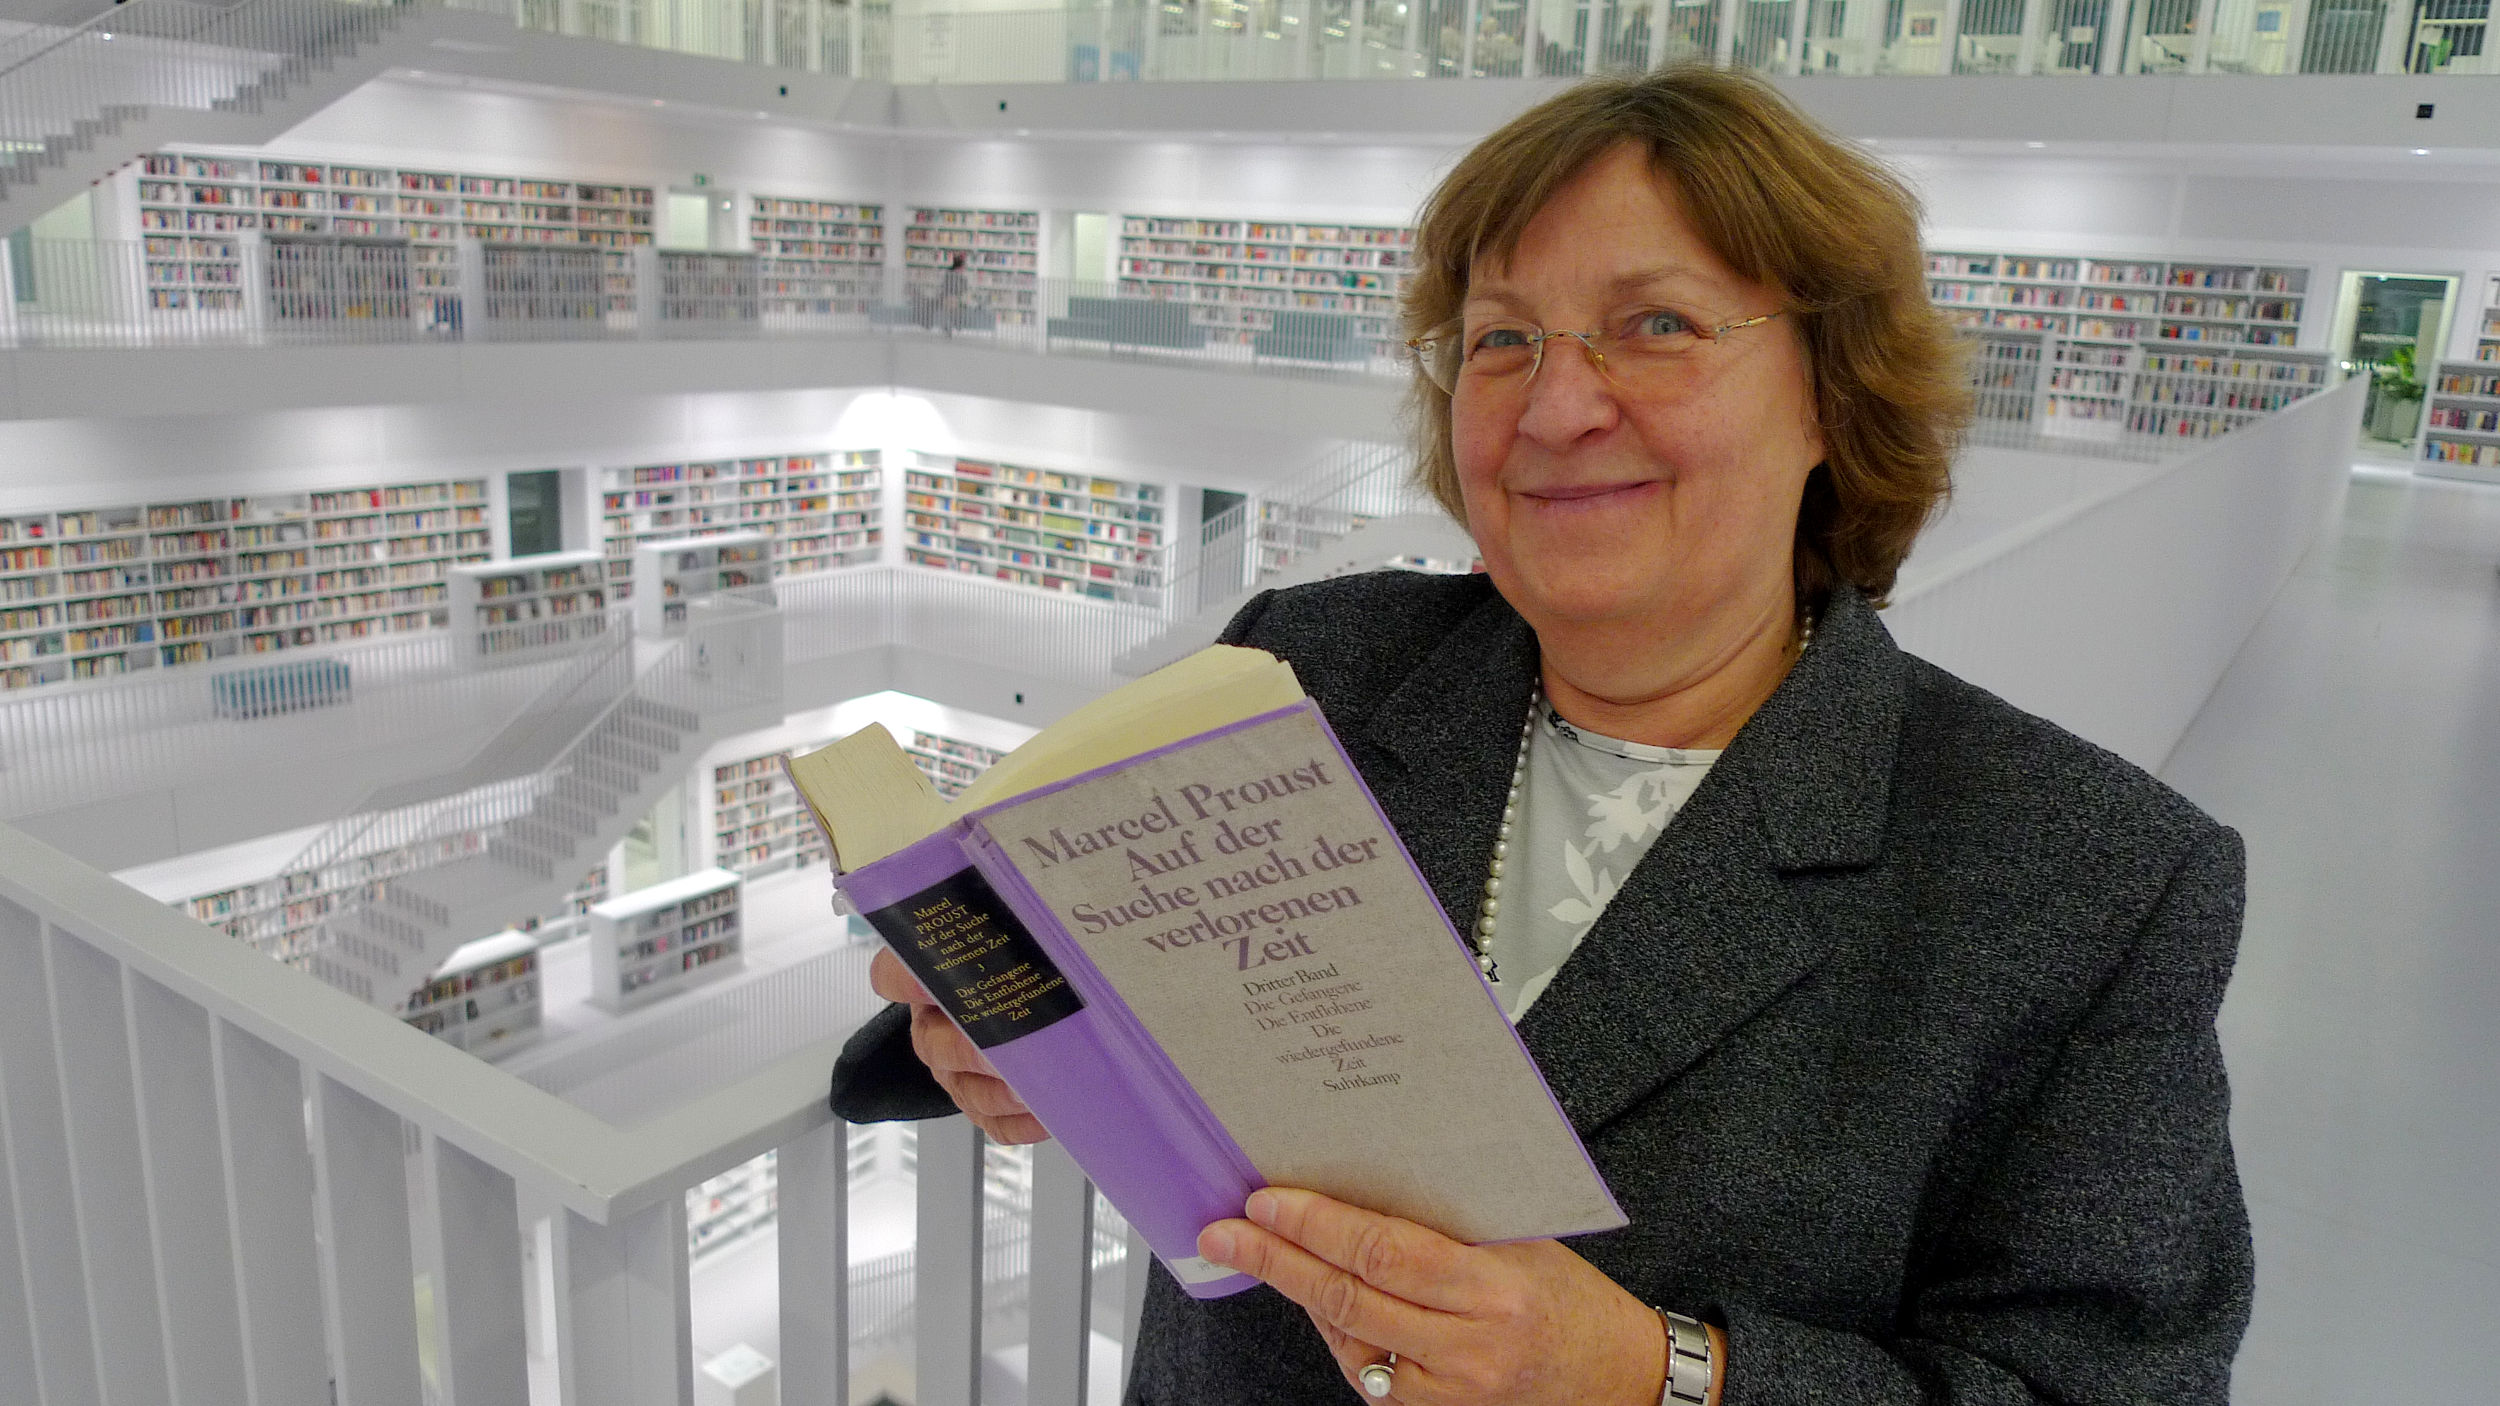 Bibliotheken sind Orte der Begegnung – Im Gespräch mit der Leiterin der Stuttgarter Bibliothek